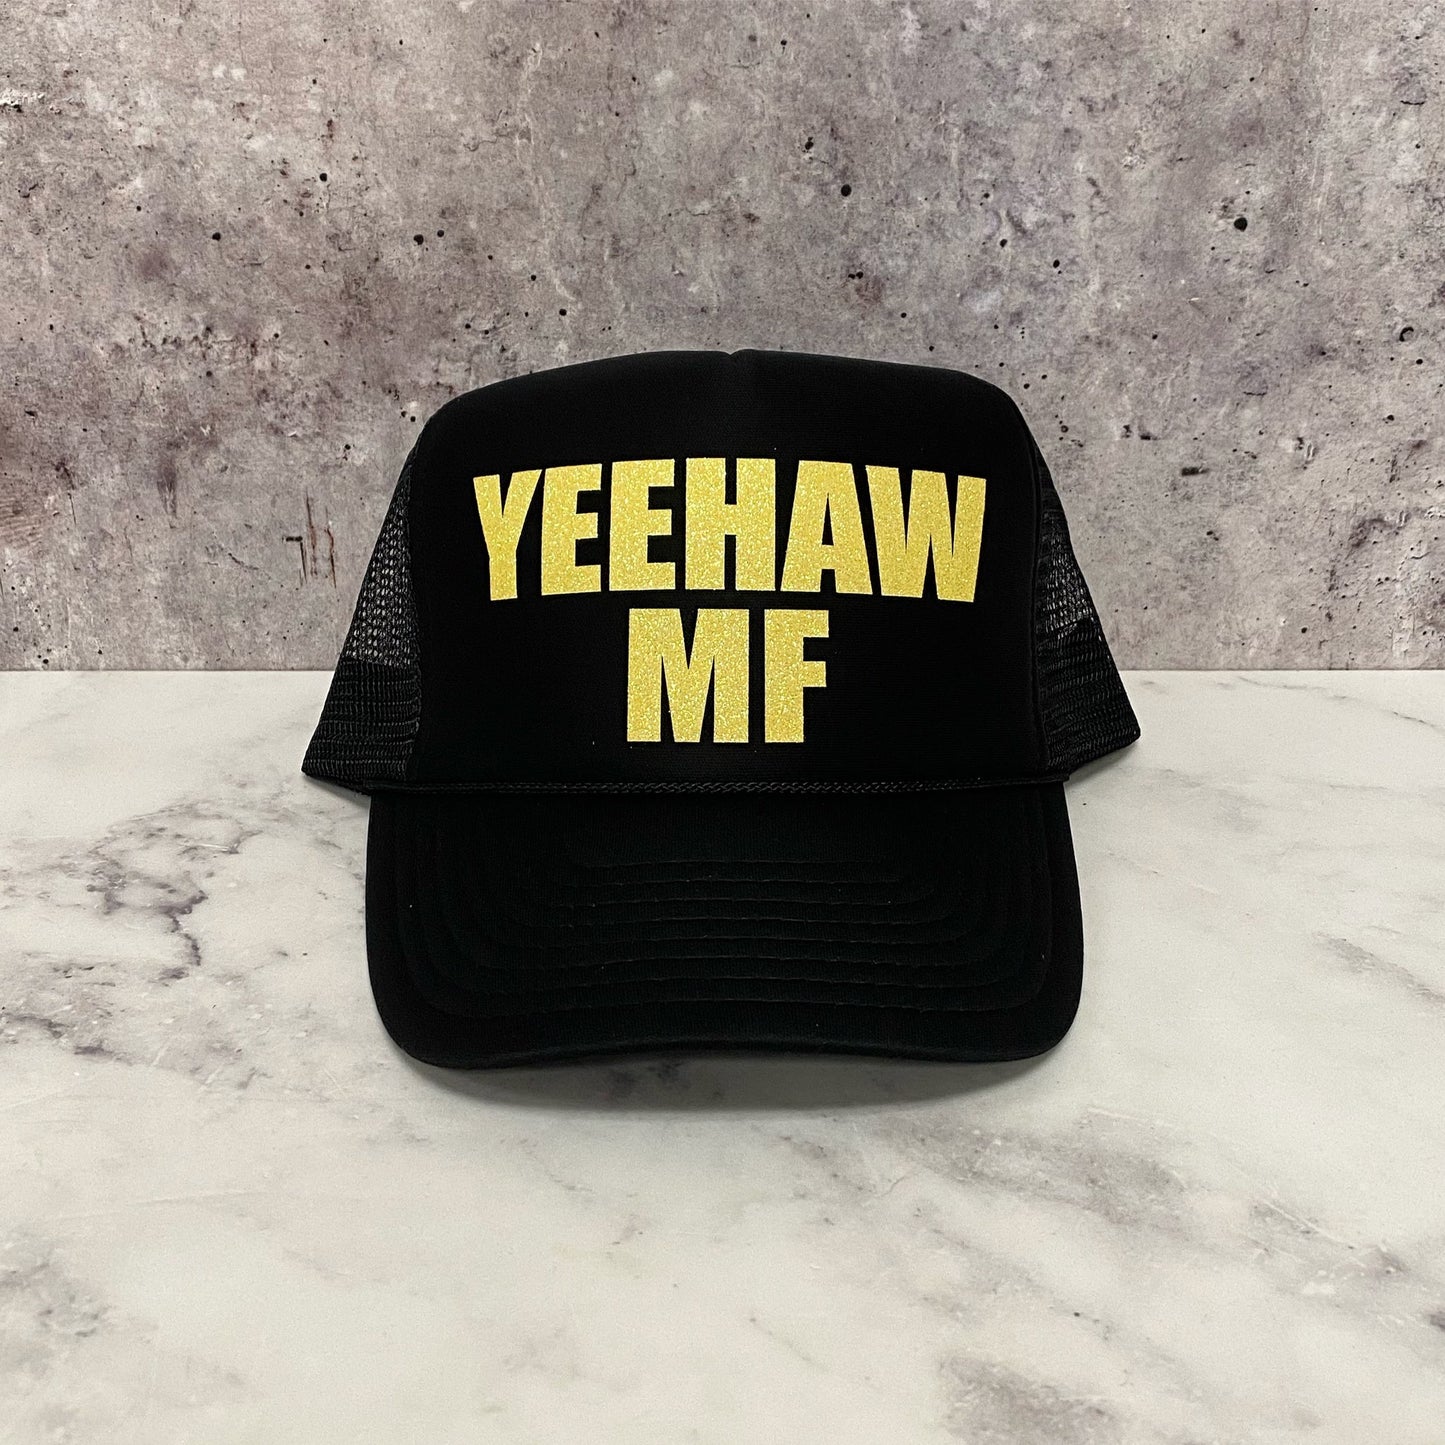 Yeehaw MF Trucker Hat